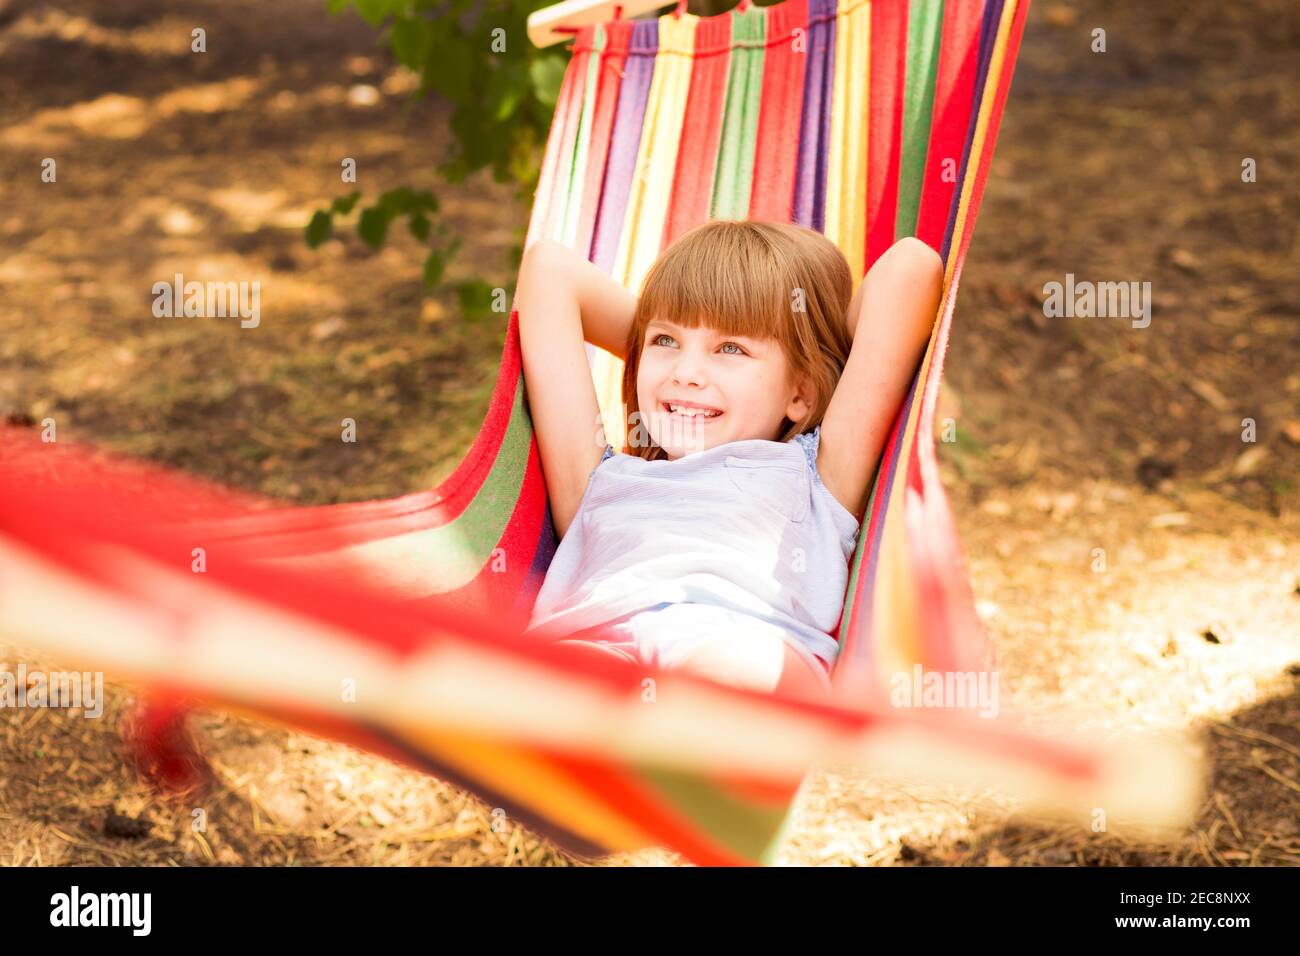 Vacanze estive. Bella bambina riposa in amaca colorata all'aperto nella foresta estiva Foto Stock